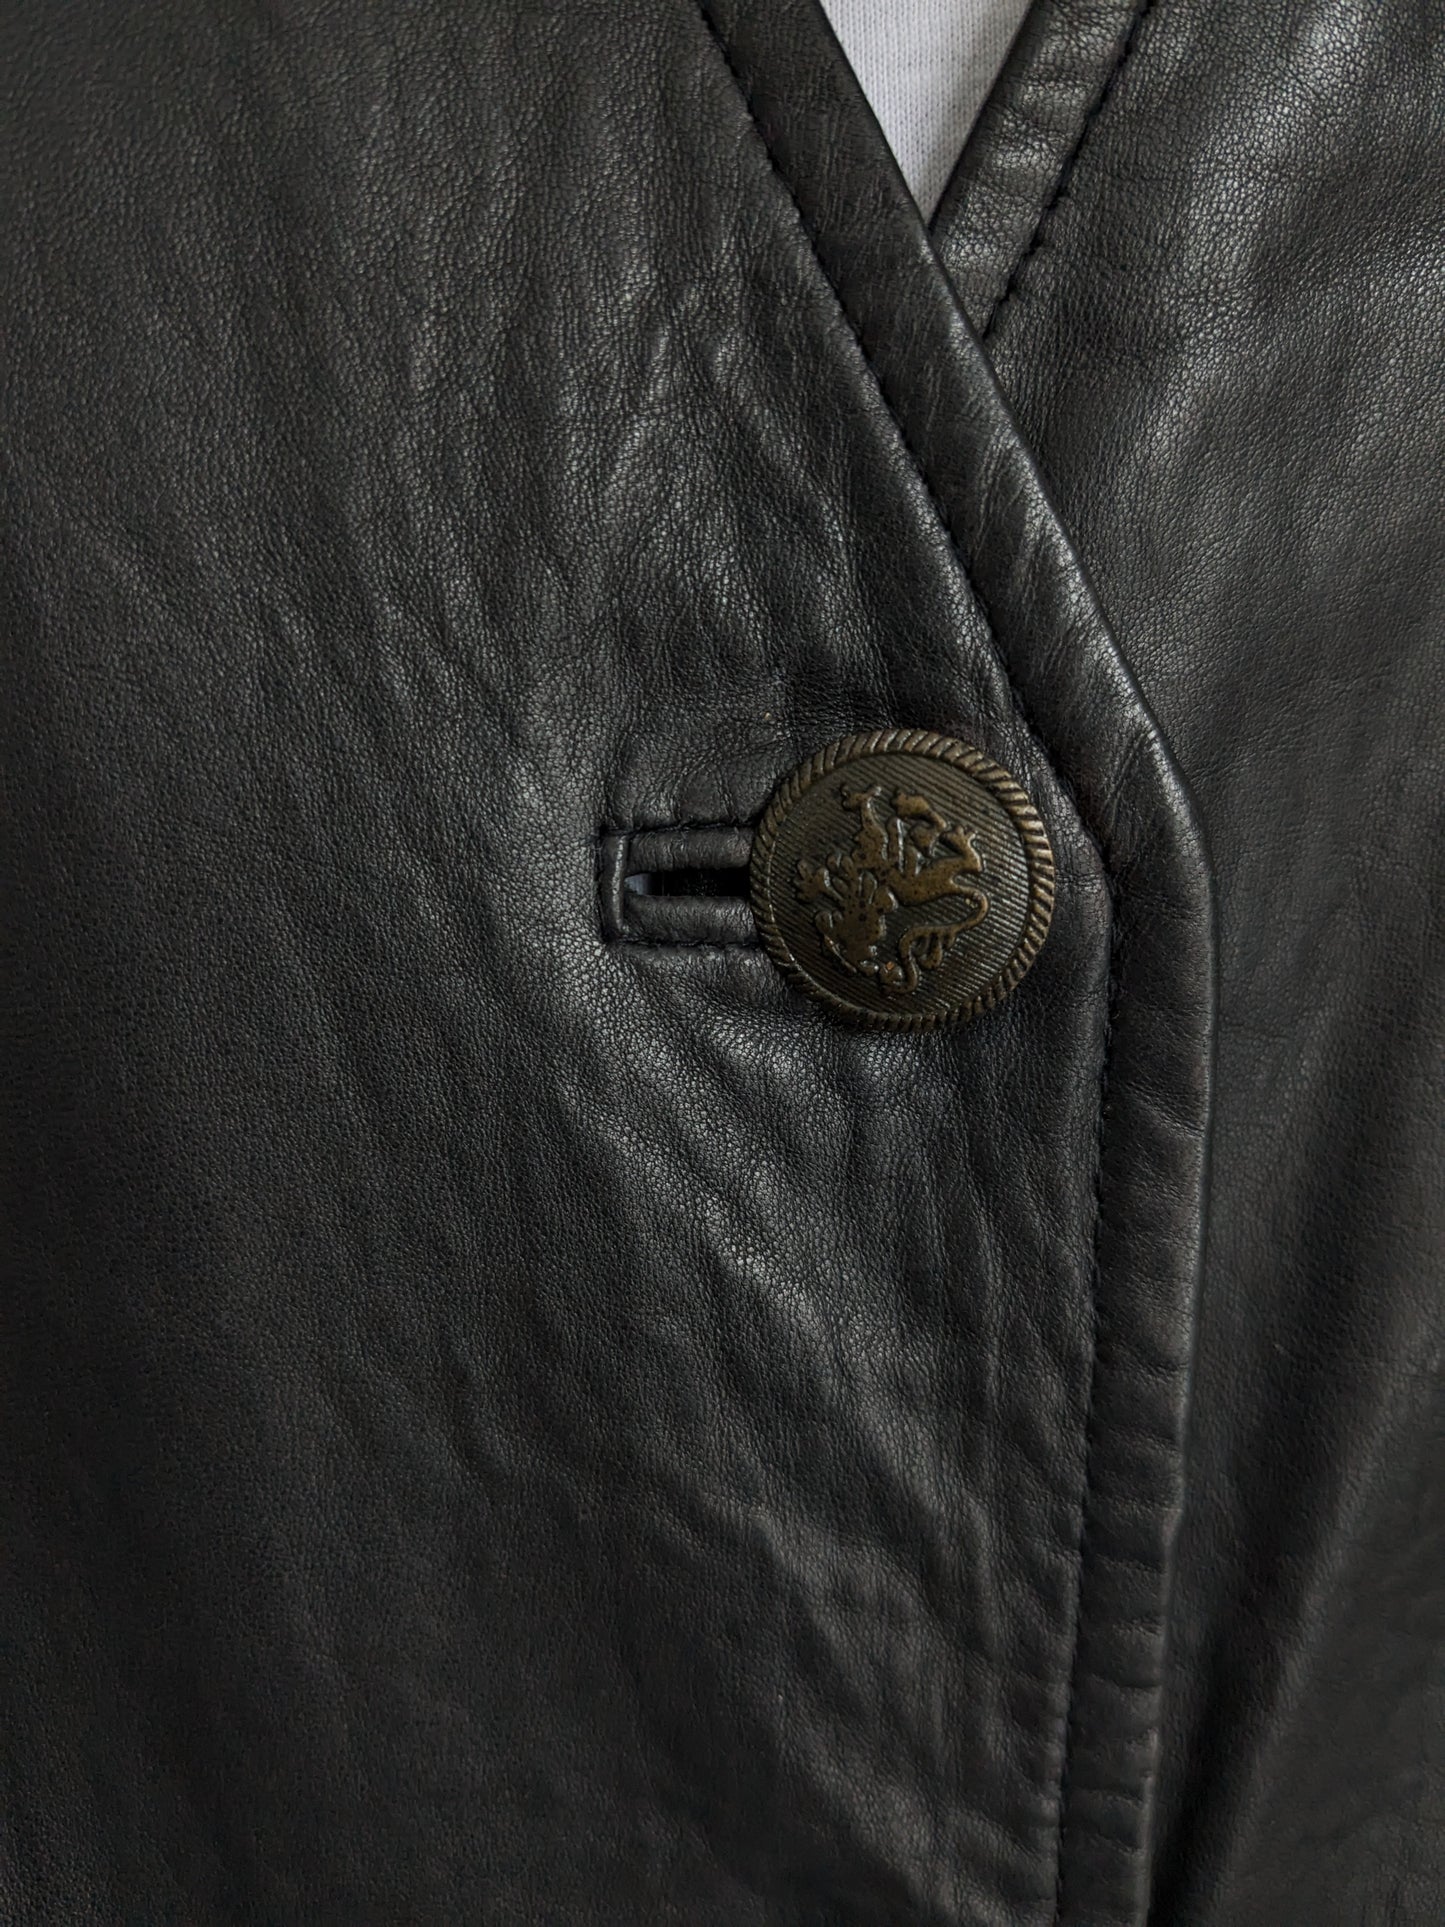 Chaleco de cuero de doble llagación de longitud media con botones hermosos. Marron oscuro. Talla L.